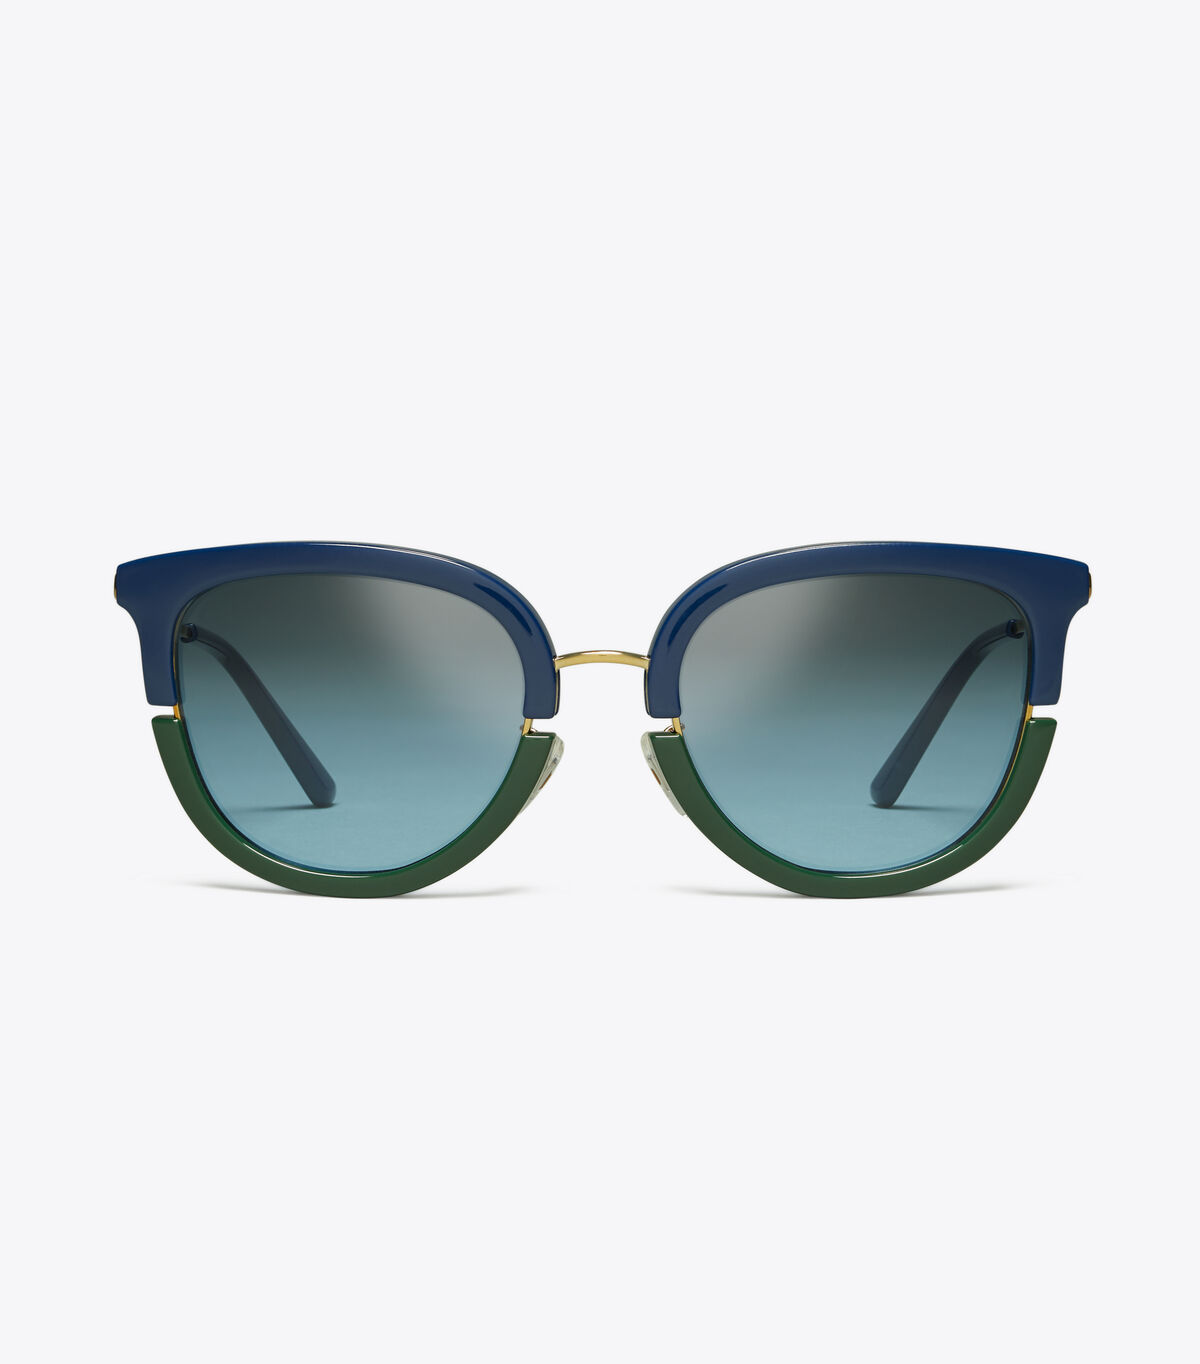 نظارات شمسية كولور بلوك فانتوس / 141 / نظارات شمسية